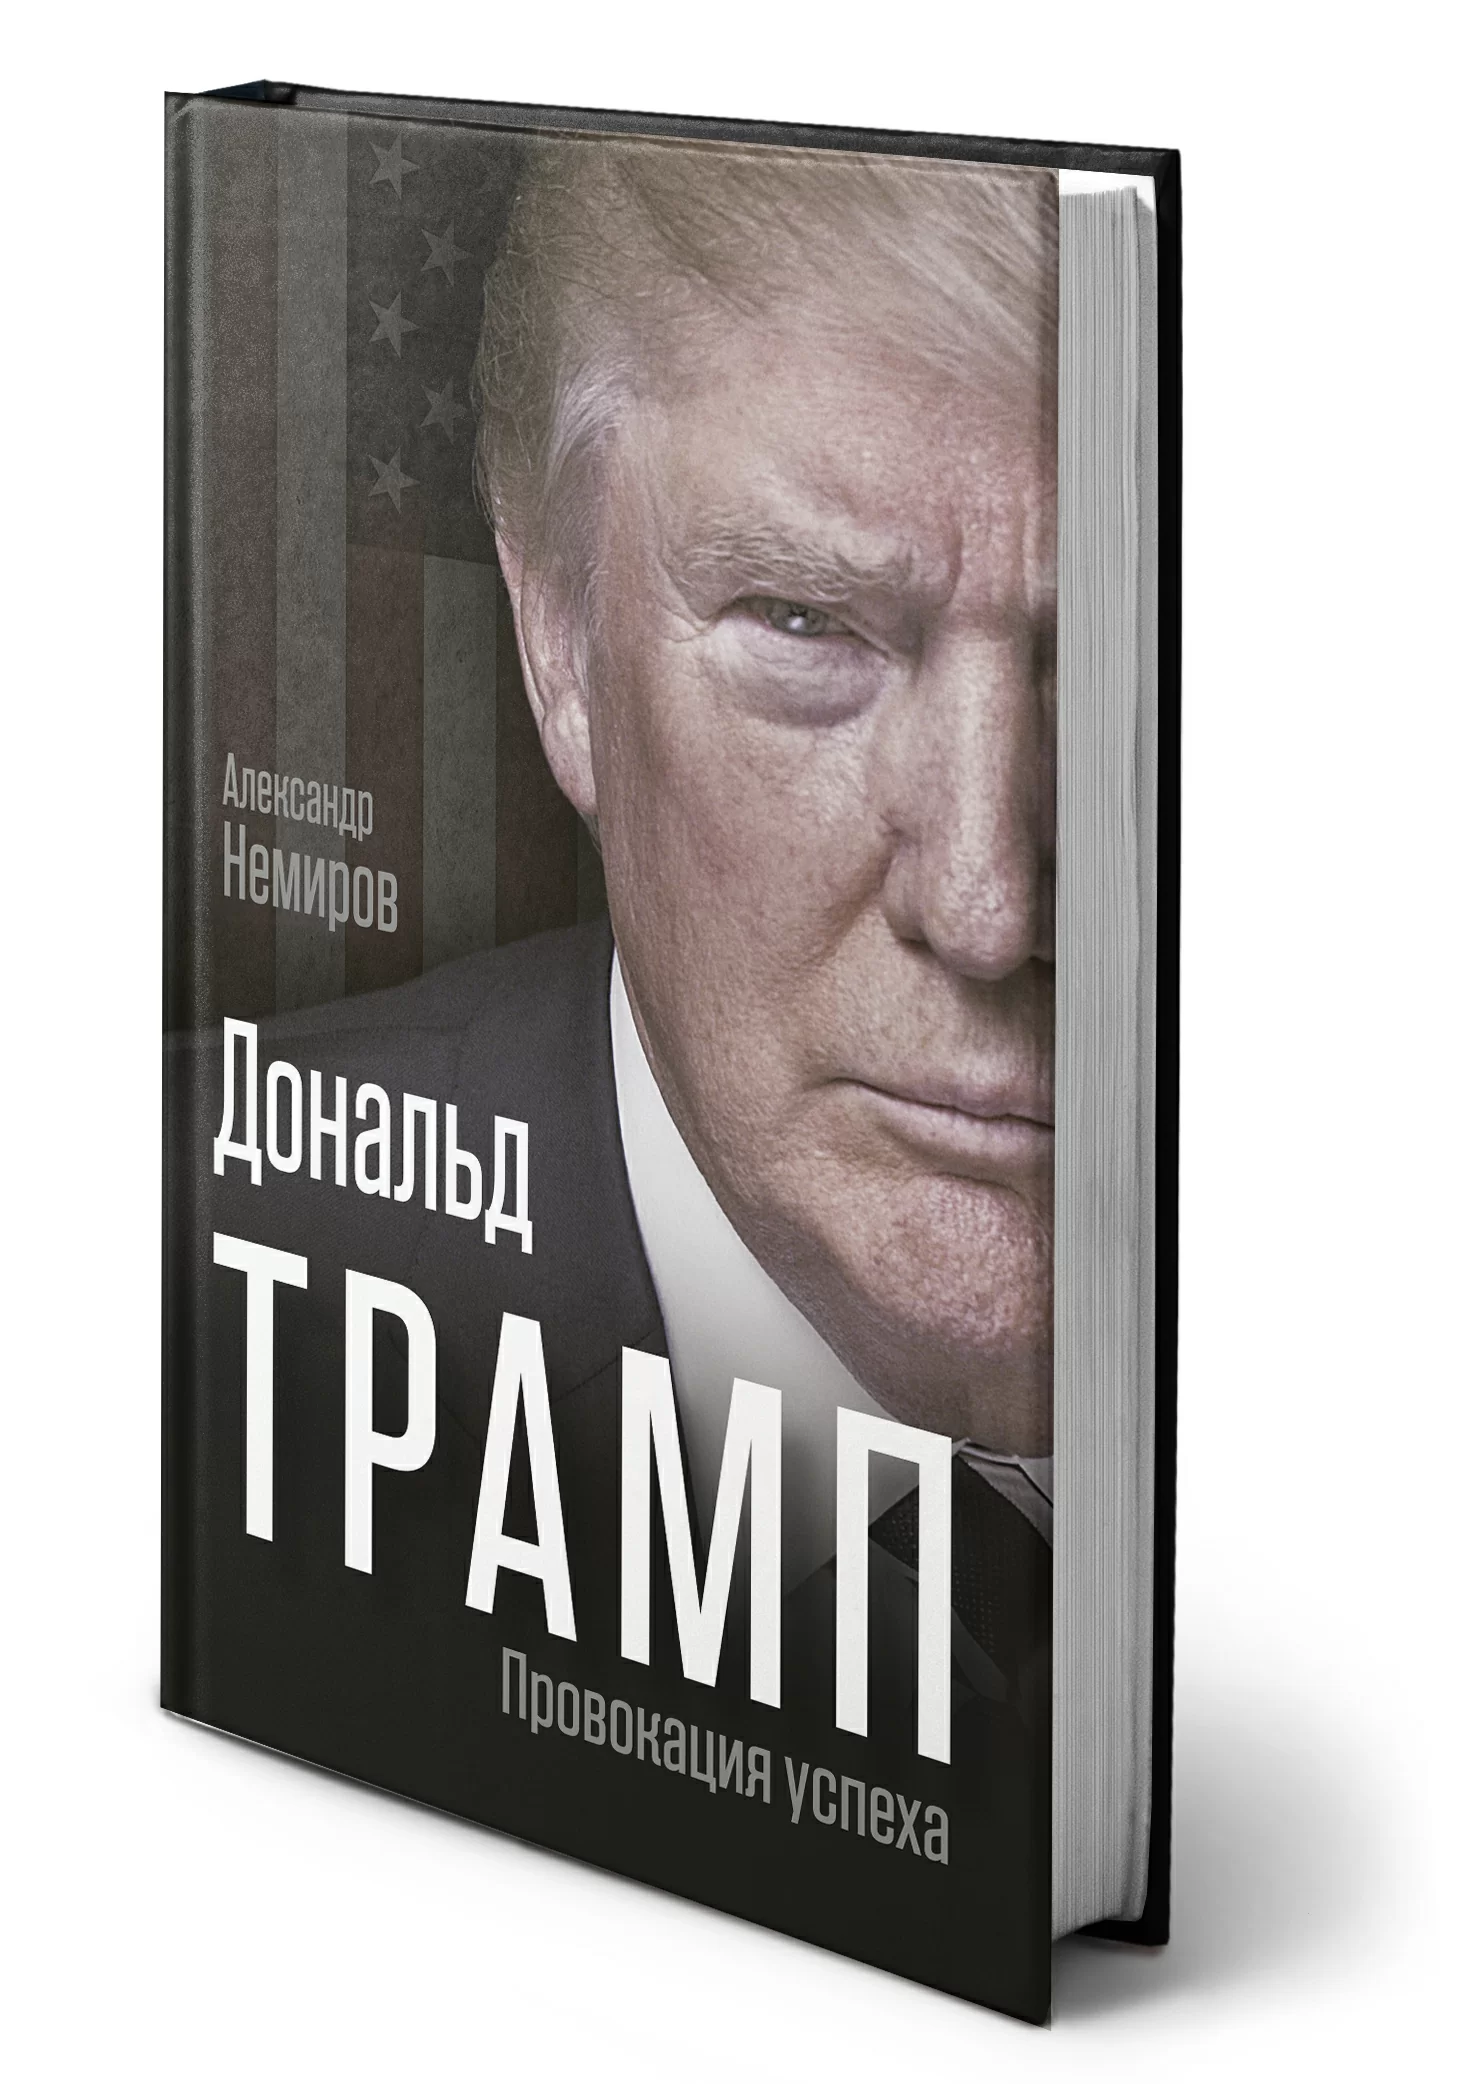 А. Немиров - Дональд Трамп - Провокация успеха